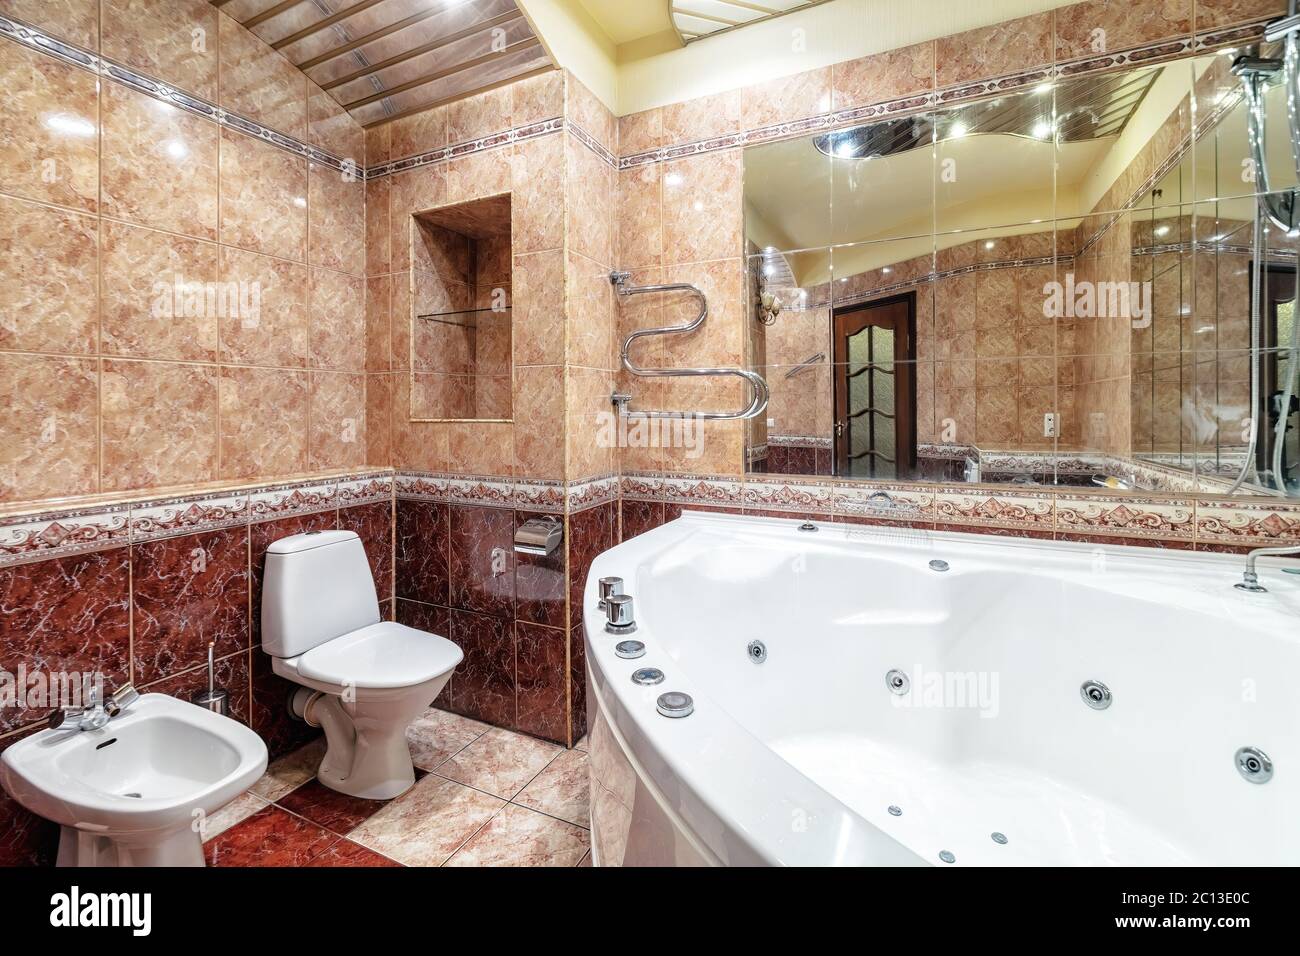 Geräumige neue leere Whirlpool Badewanne im Badezimmer mit modernen Fliesen Stockfoto